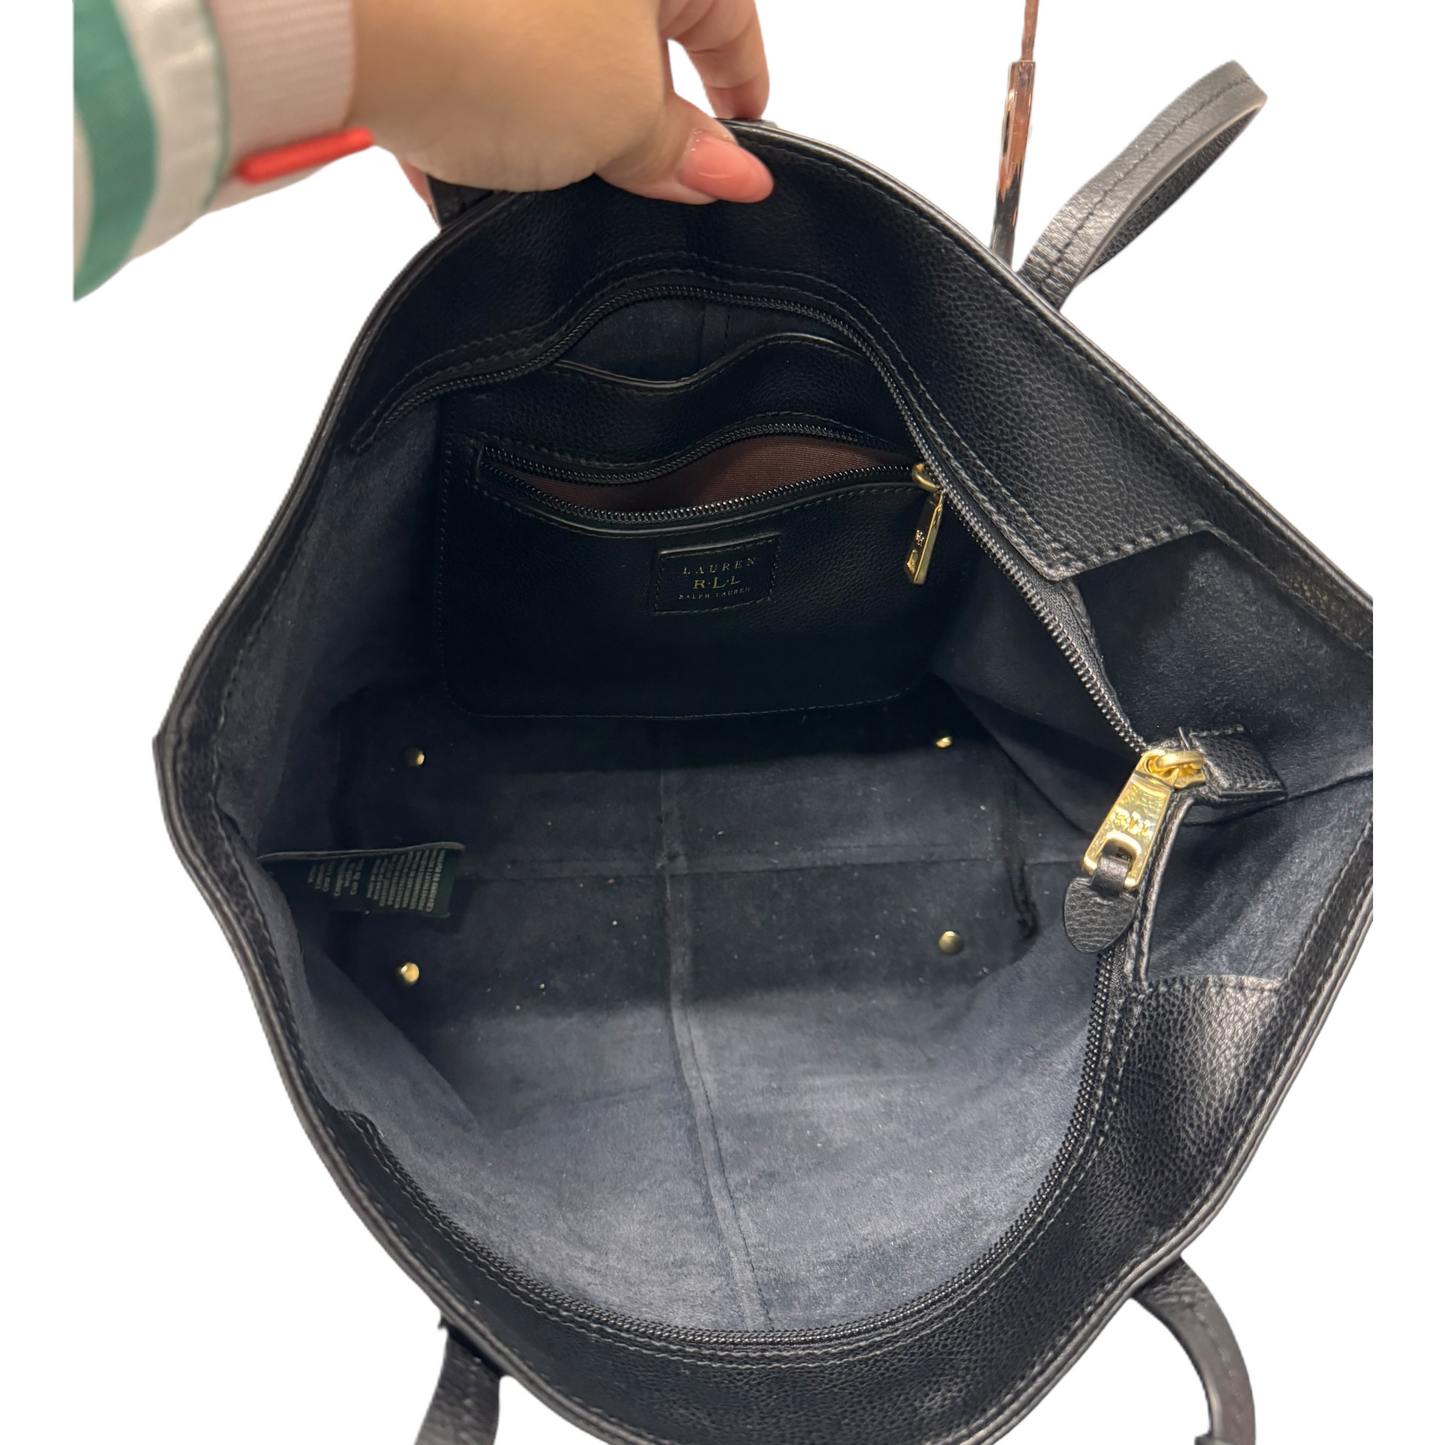 Handbag Leather By Lauren By Ralph Lauren  Size: Medium